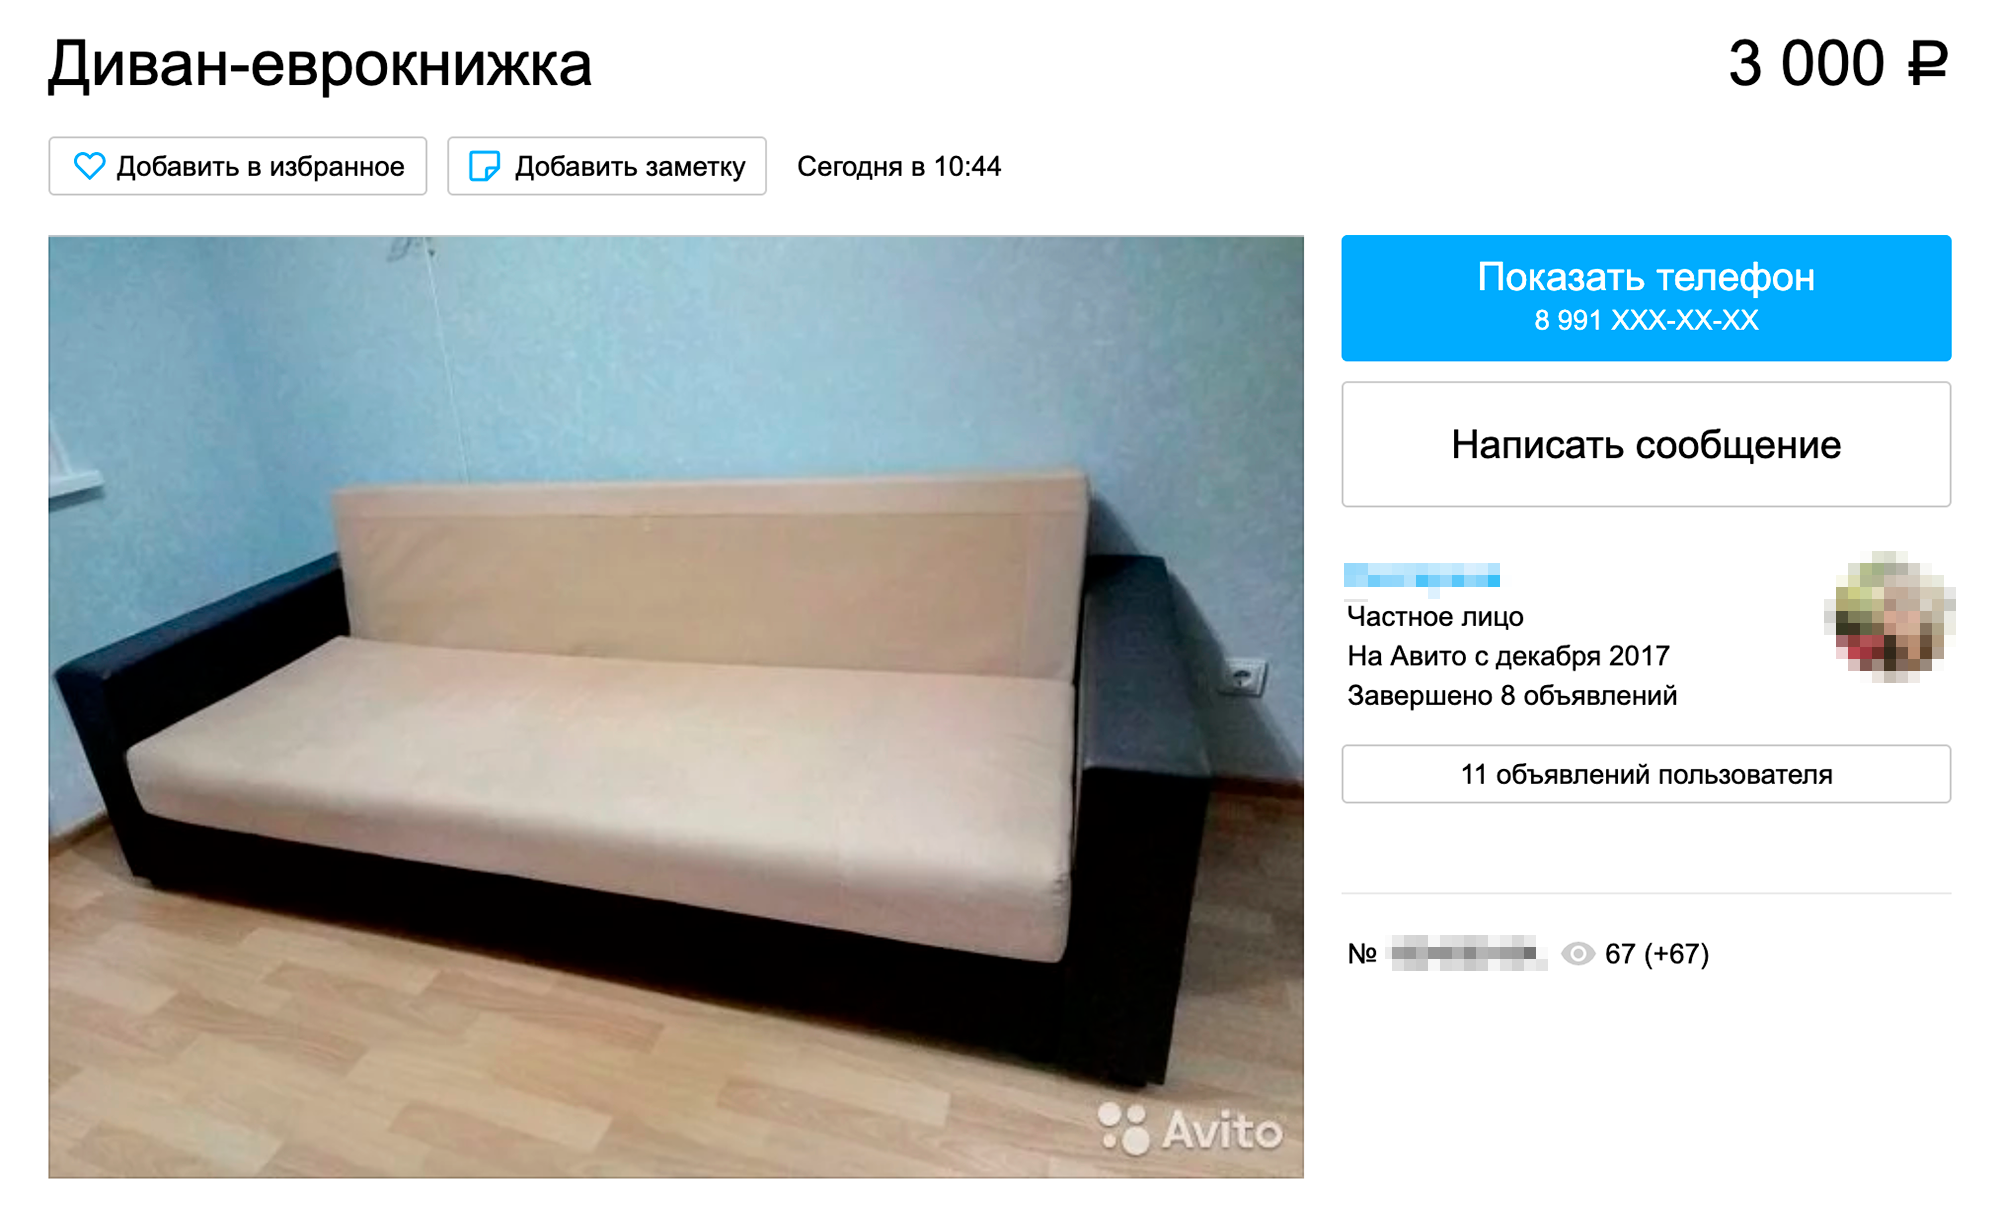 Кровать и диван в нормальном состоянии продают за 3—5 тысяч